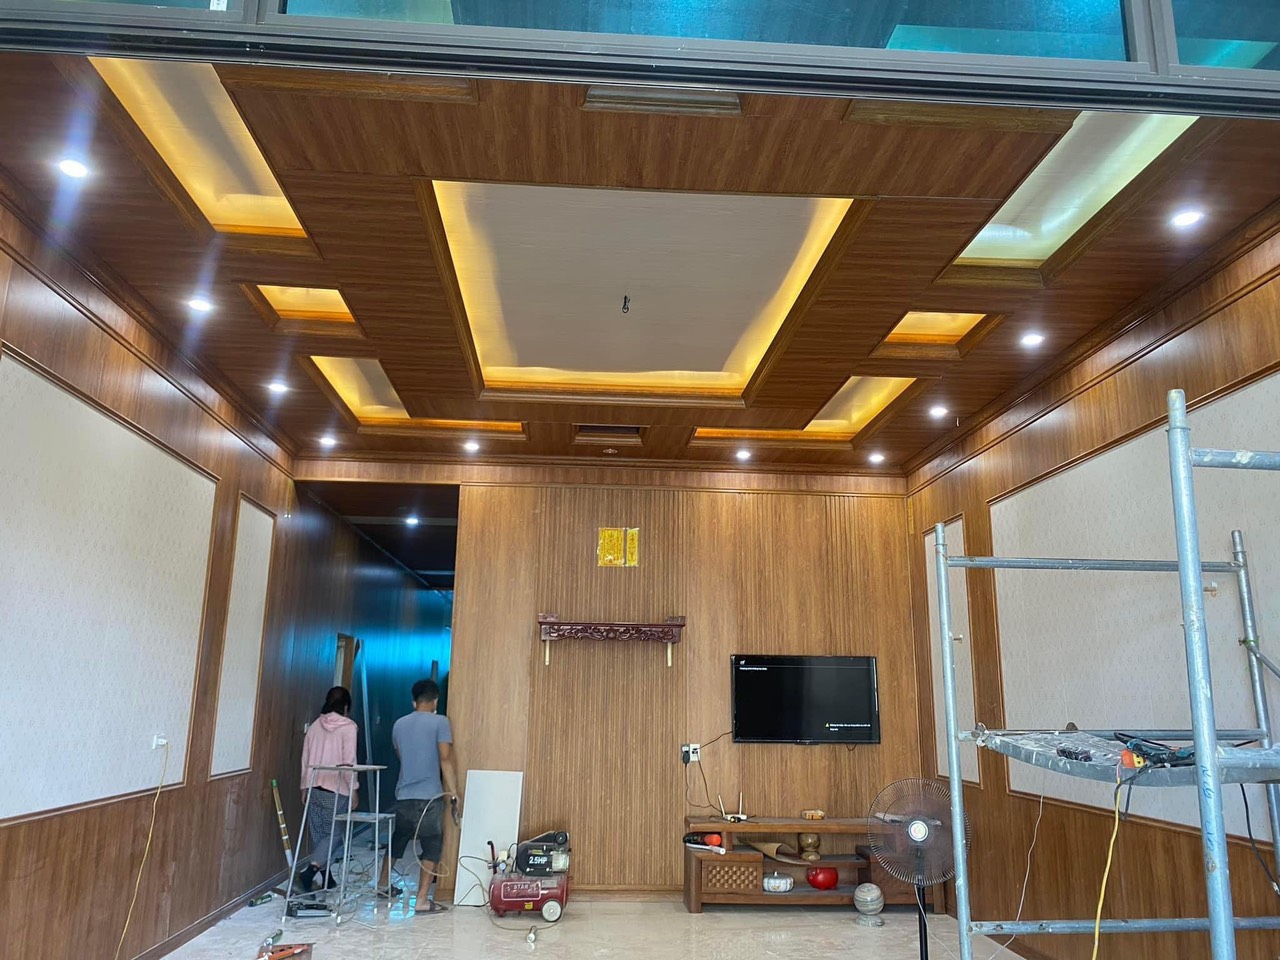 Ốp trần trong nhà tại Quy Nhơn - Bình Định